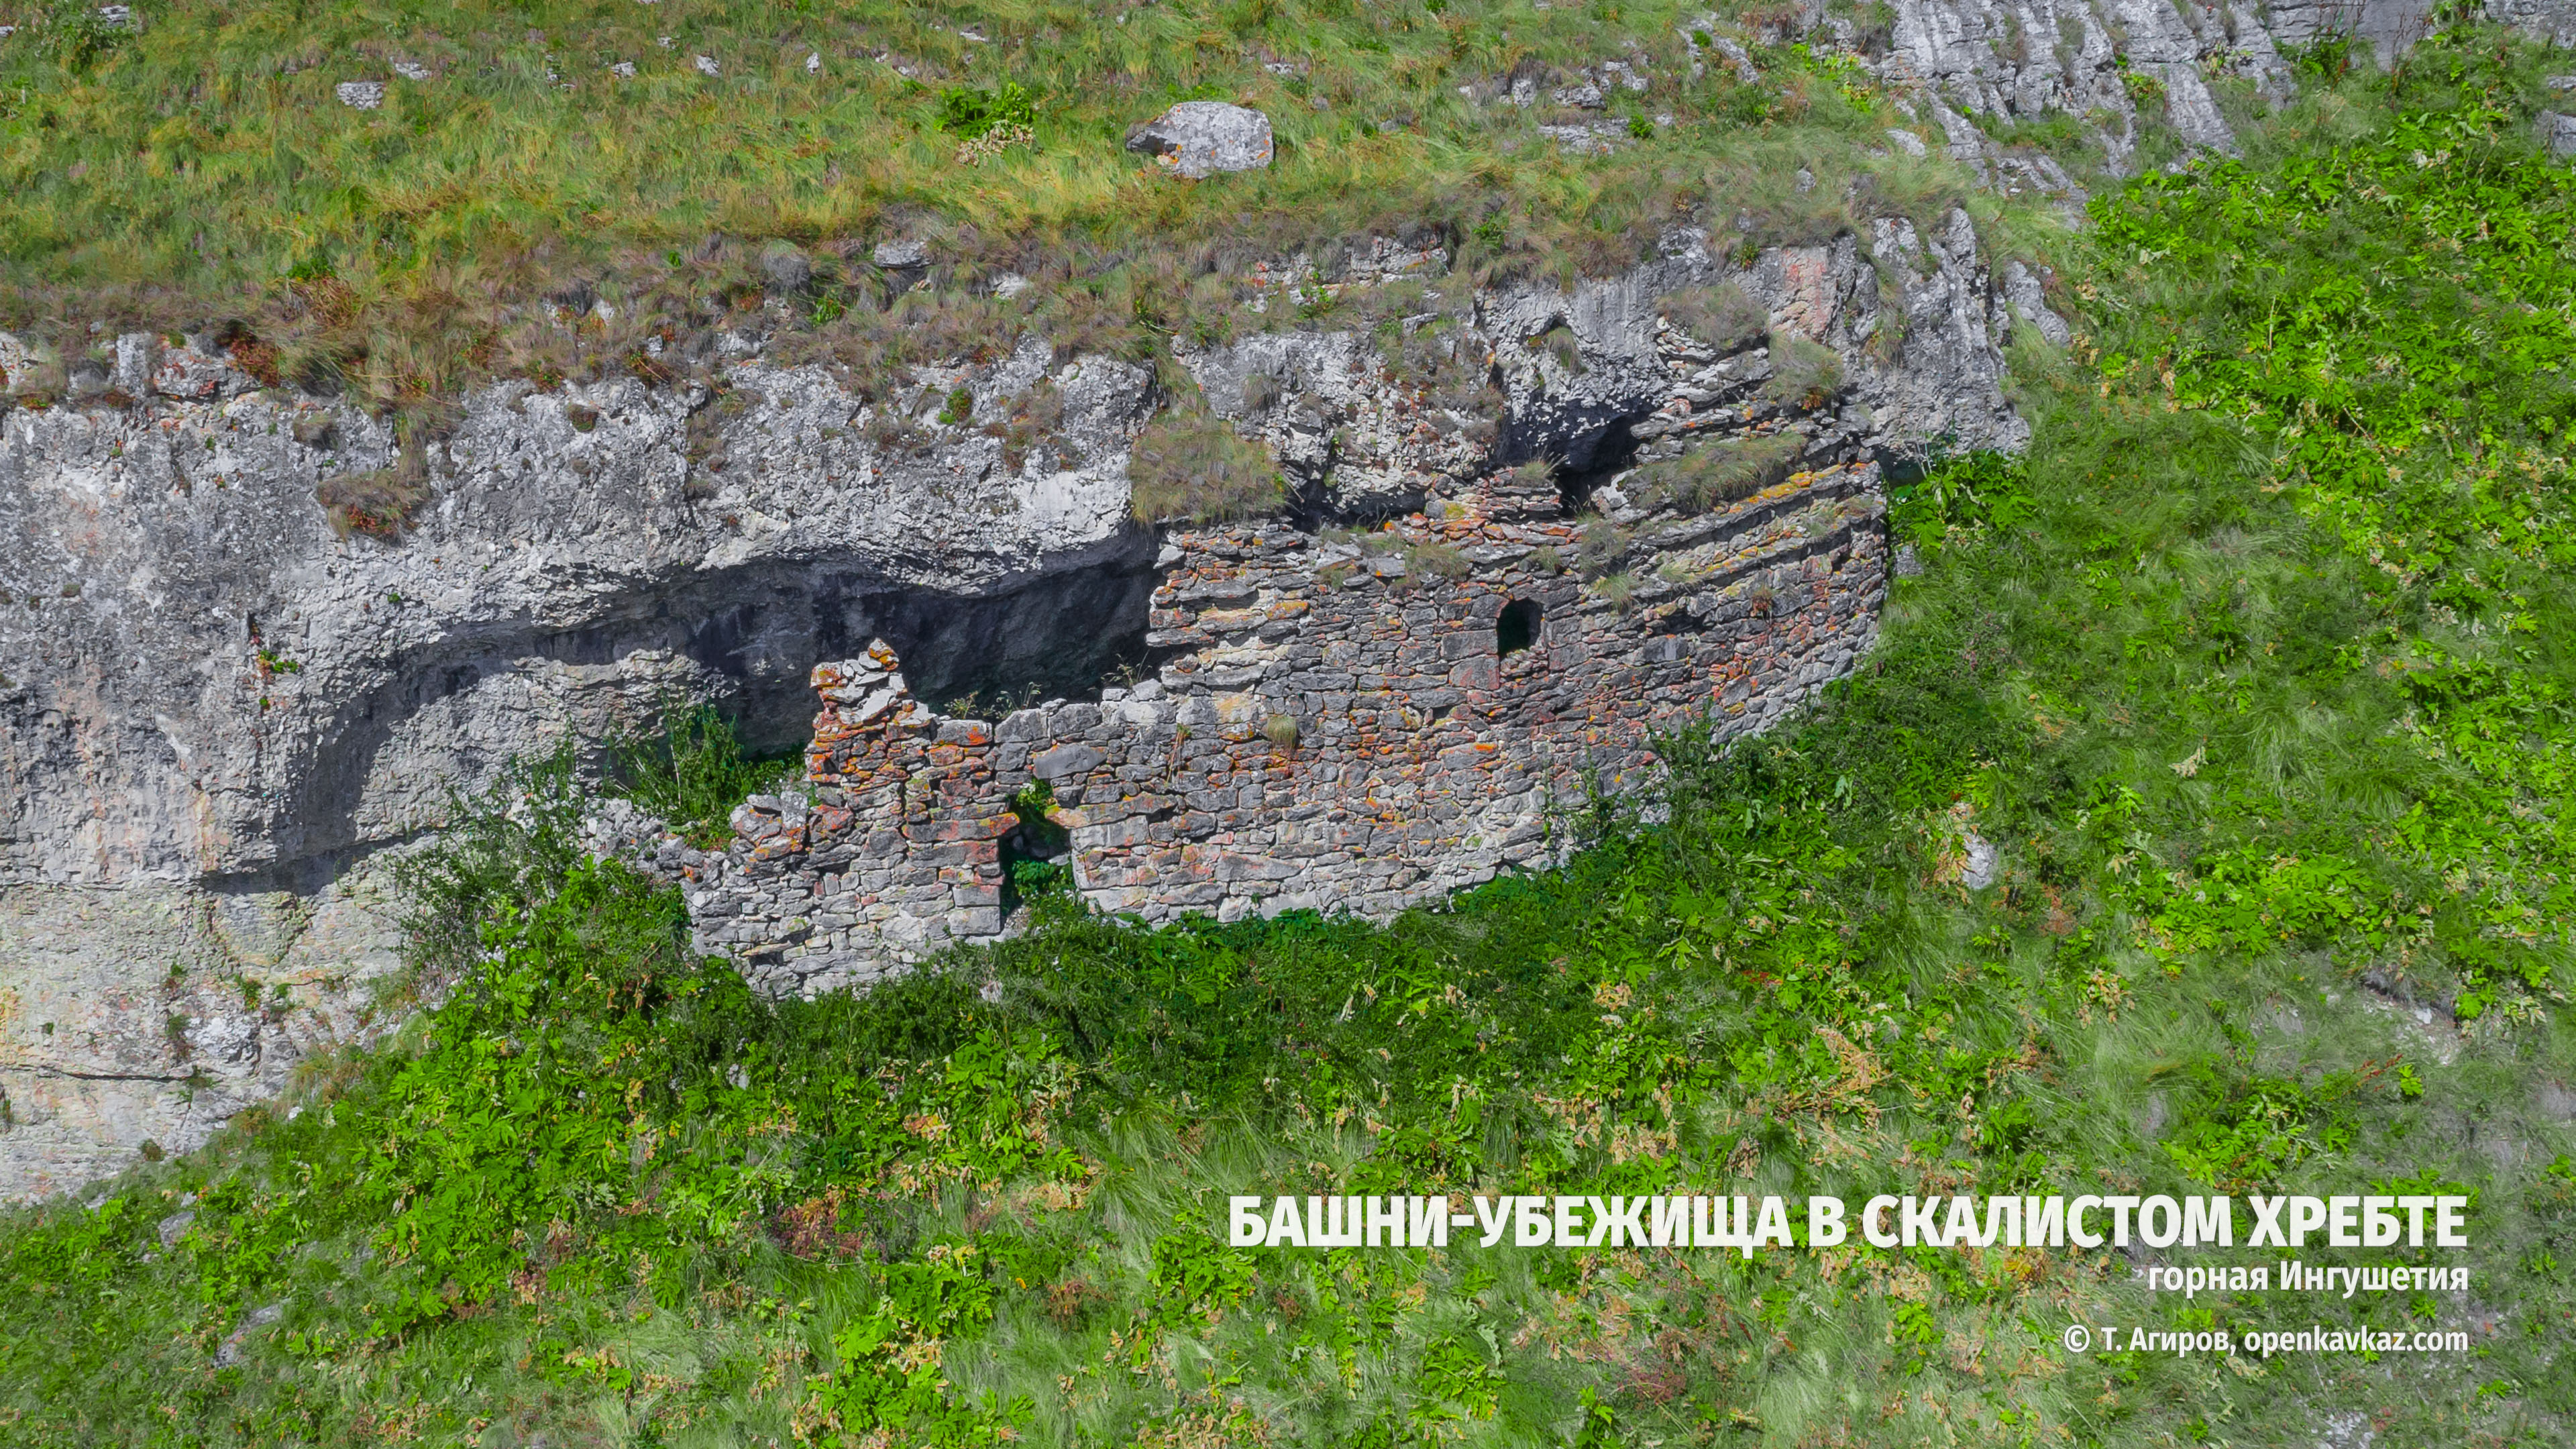 Восемь башен-убежищ в пещерах Скалистого хребта, Ингушетия